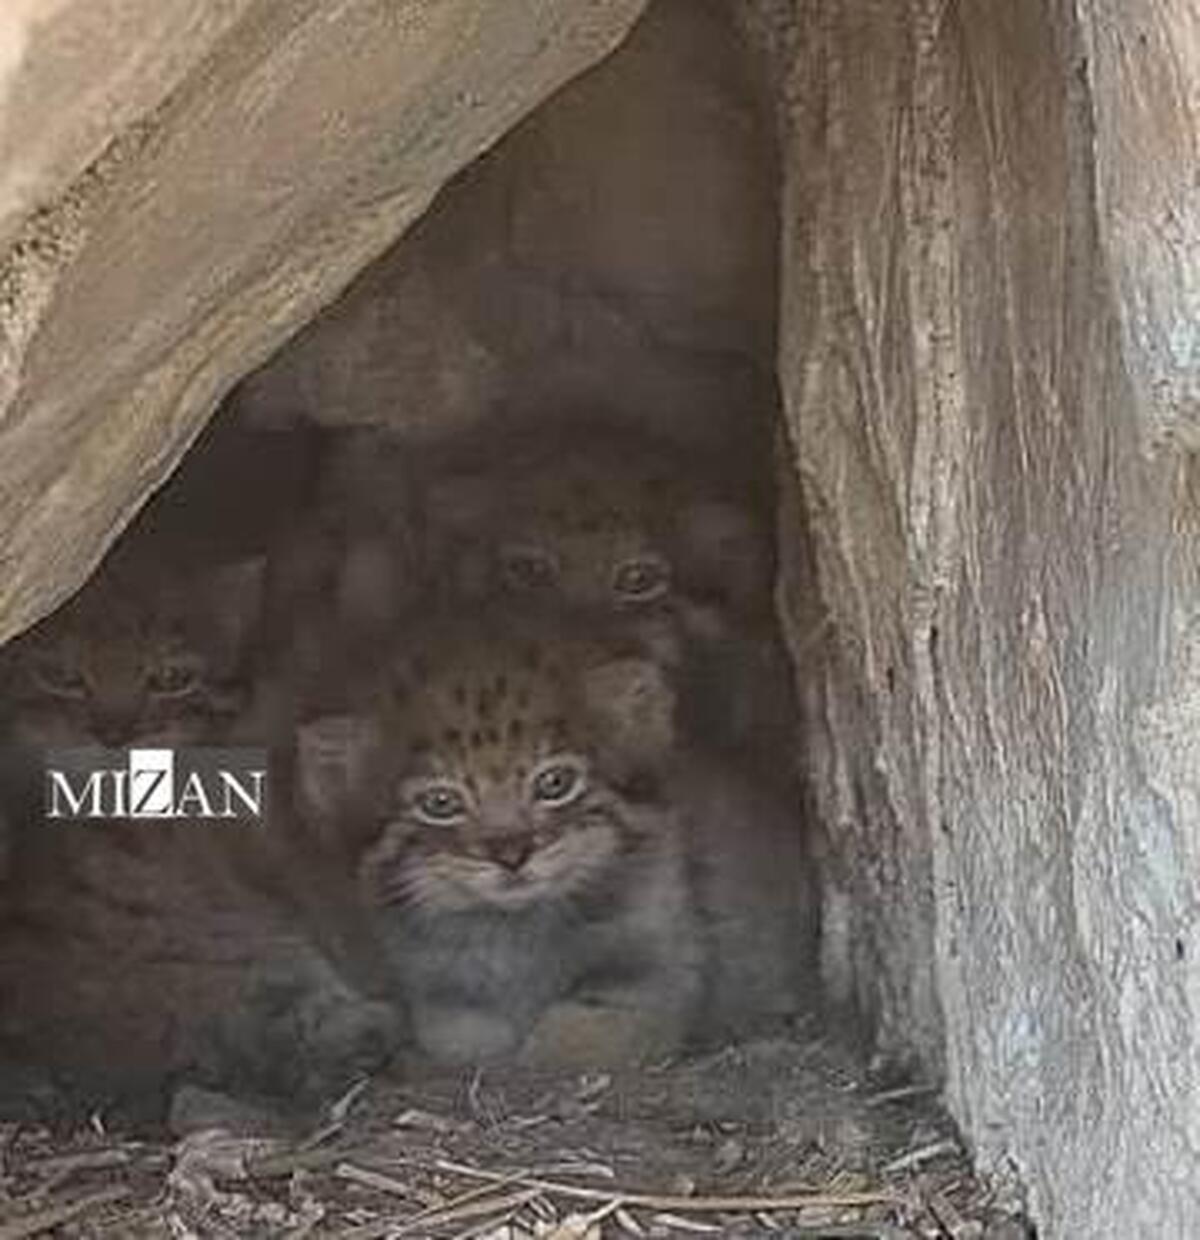 مشاهده و تصویربرداری از سه قلاده گربه پالاس در فیروزکوه